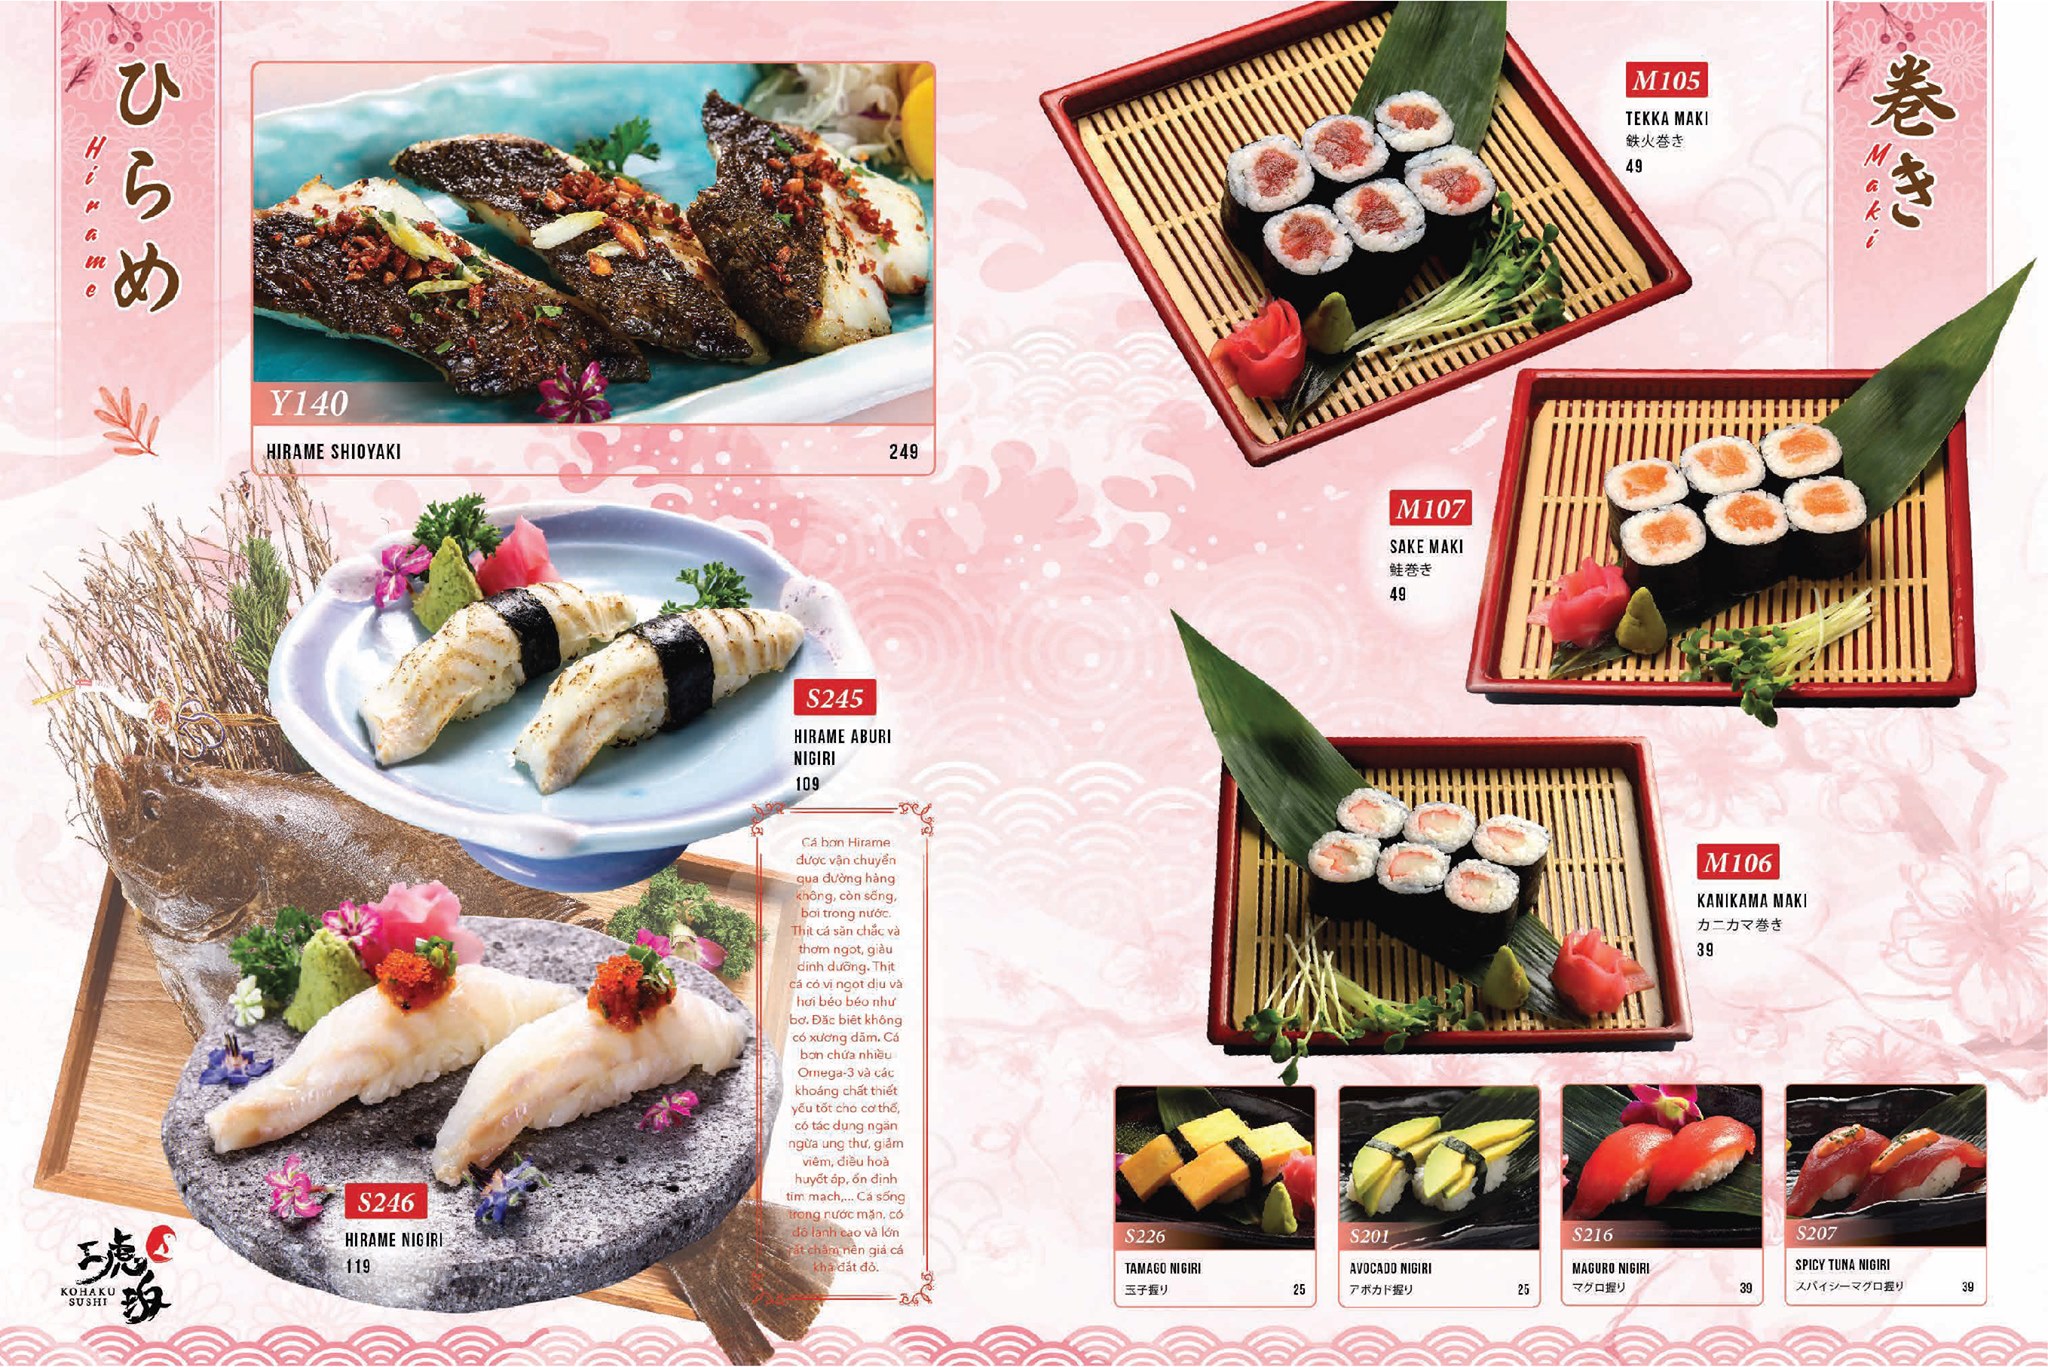 set sushi được trình bày đẹp mắt